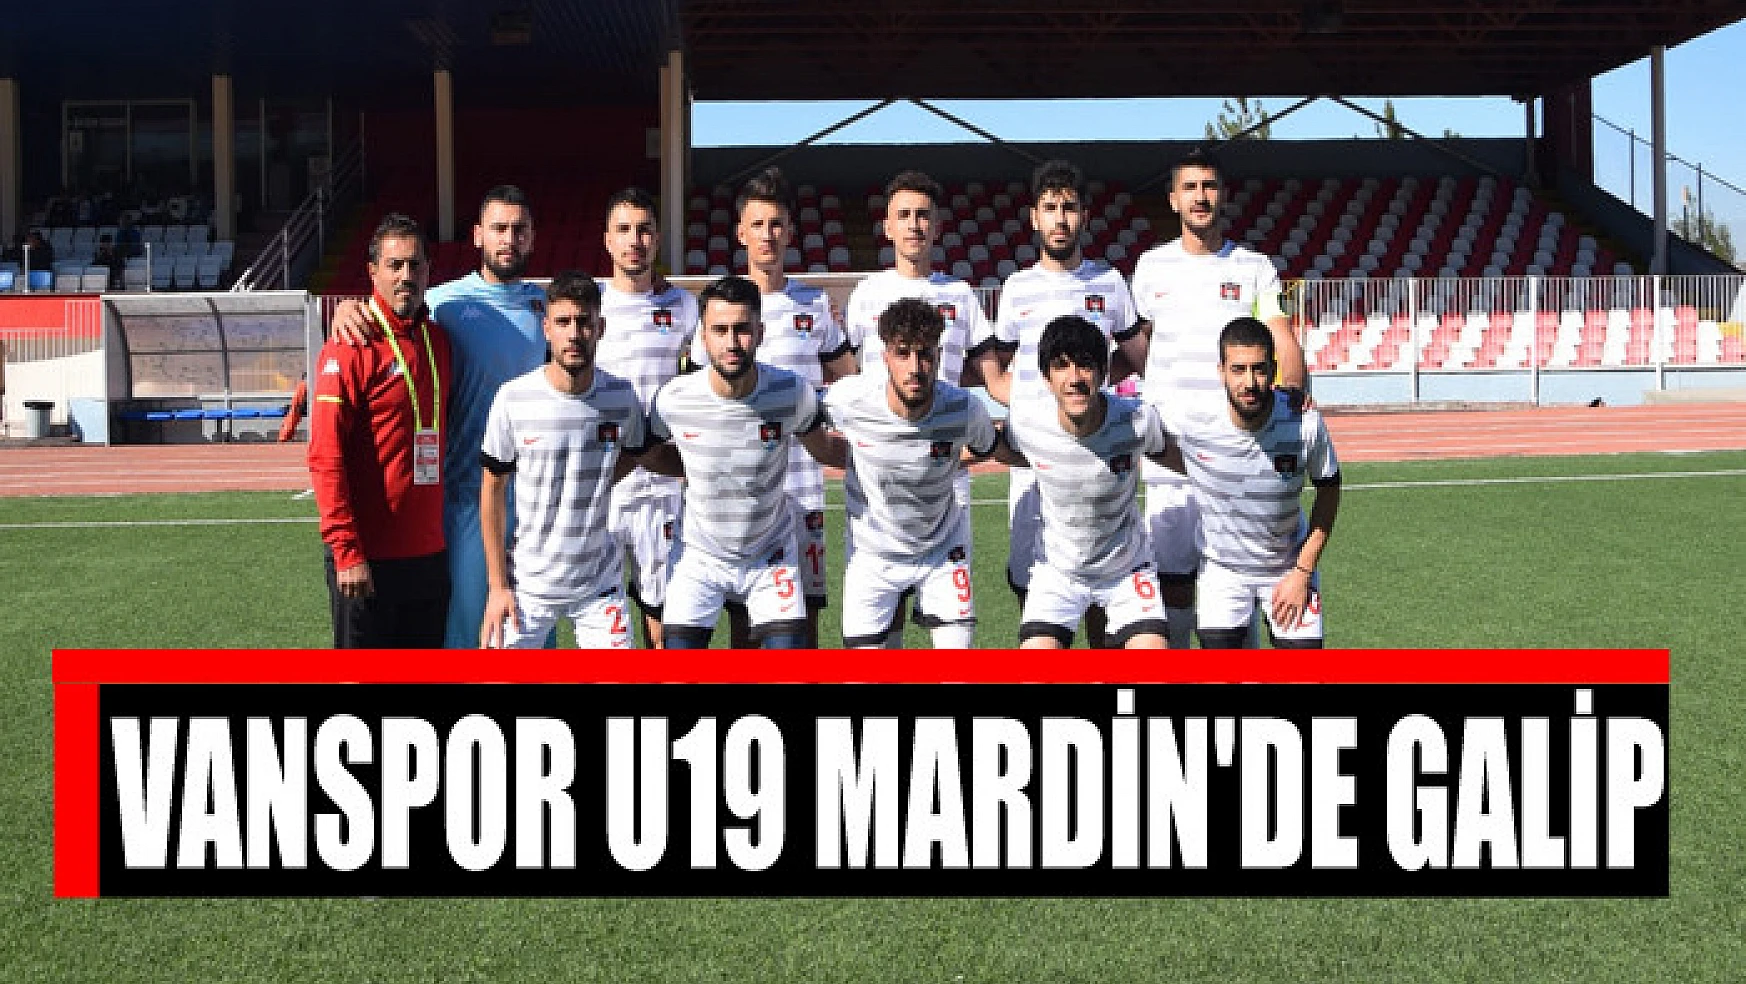 VANSPOR U19 MARDİN'DE GALİP